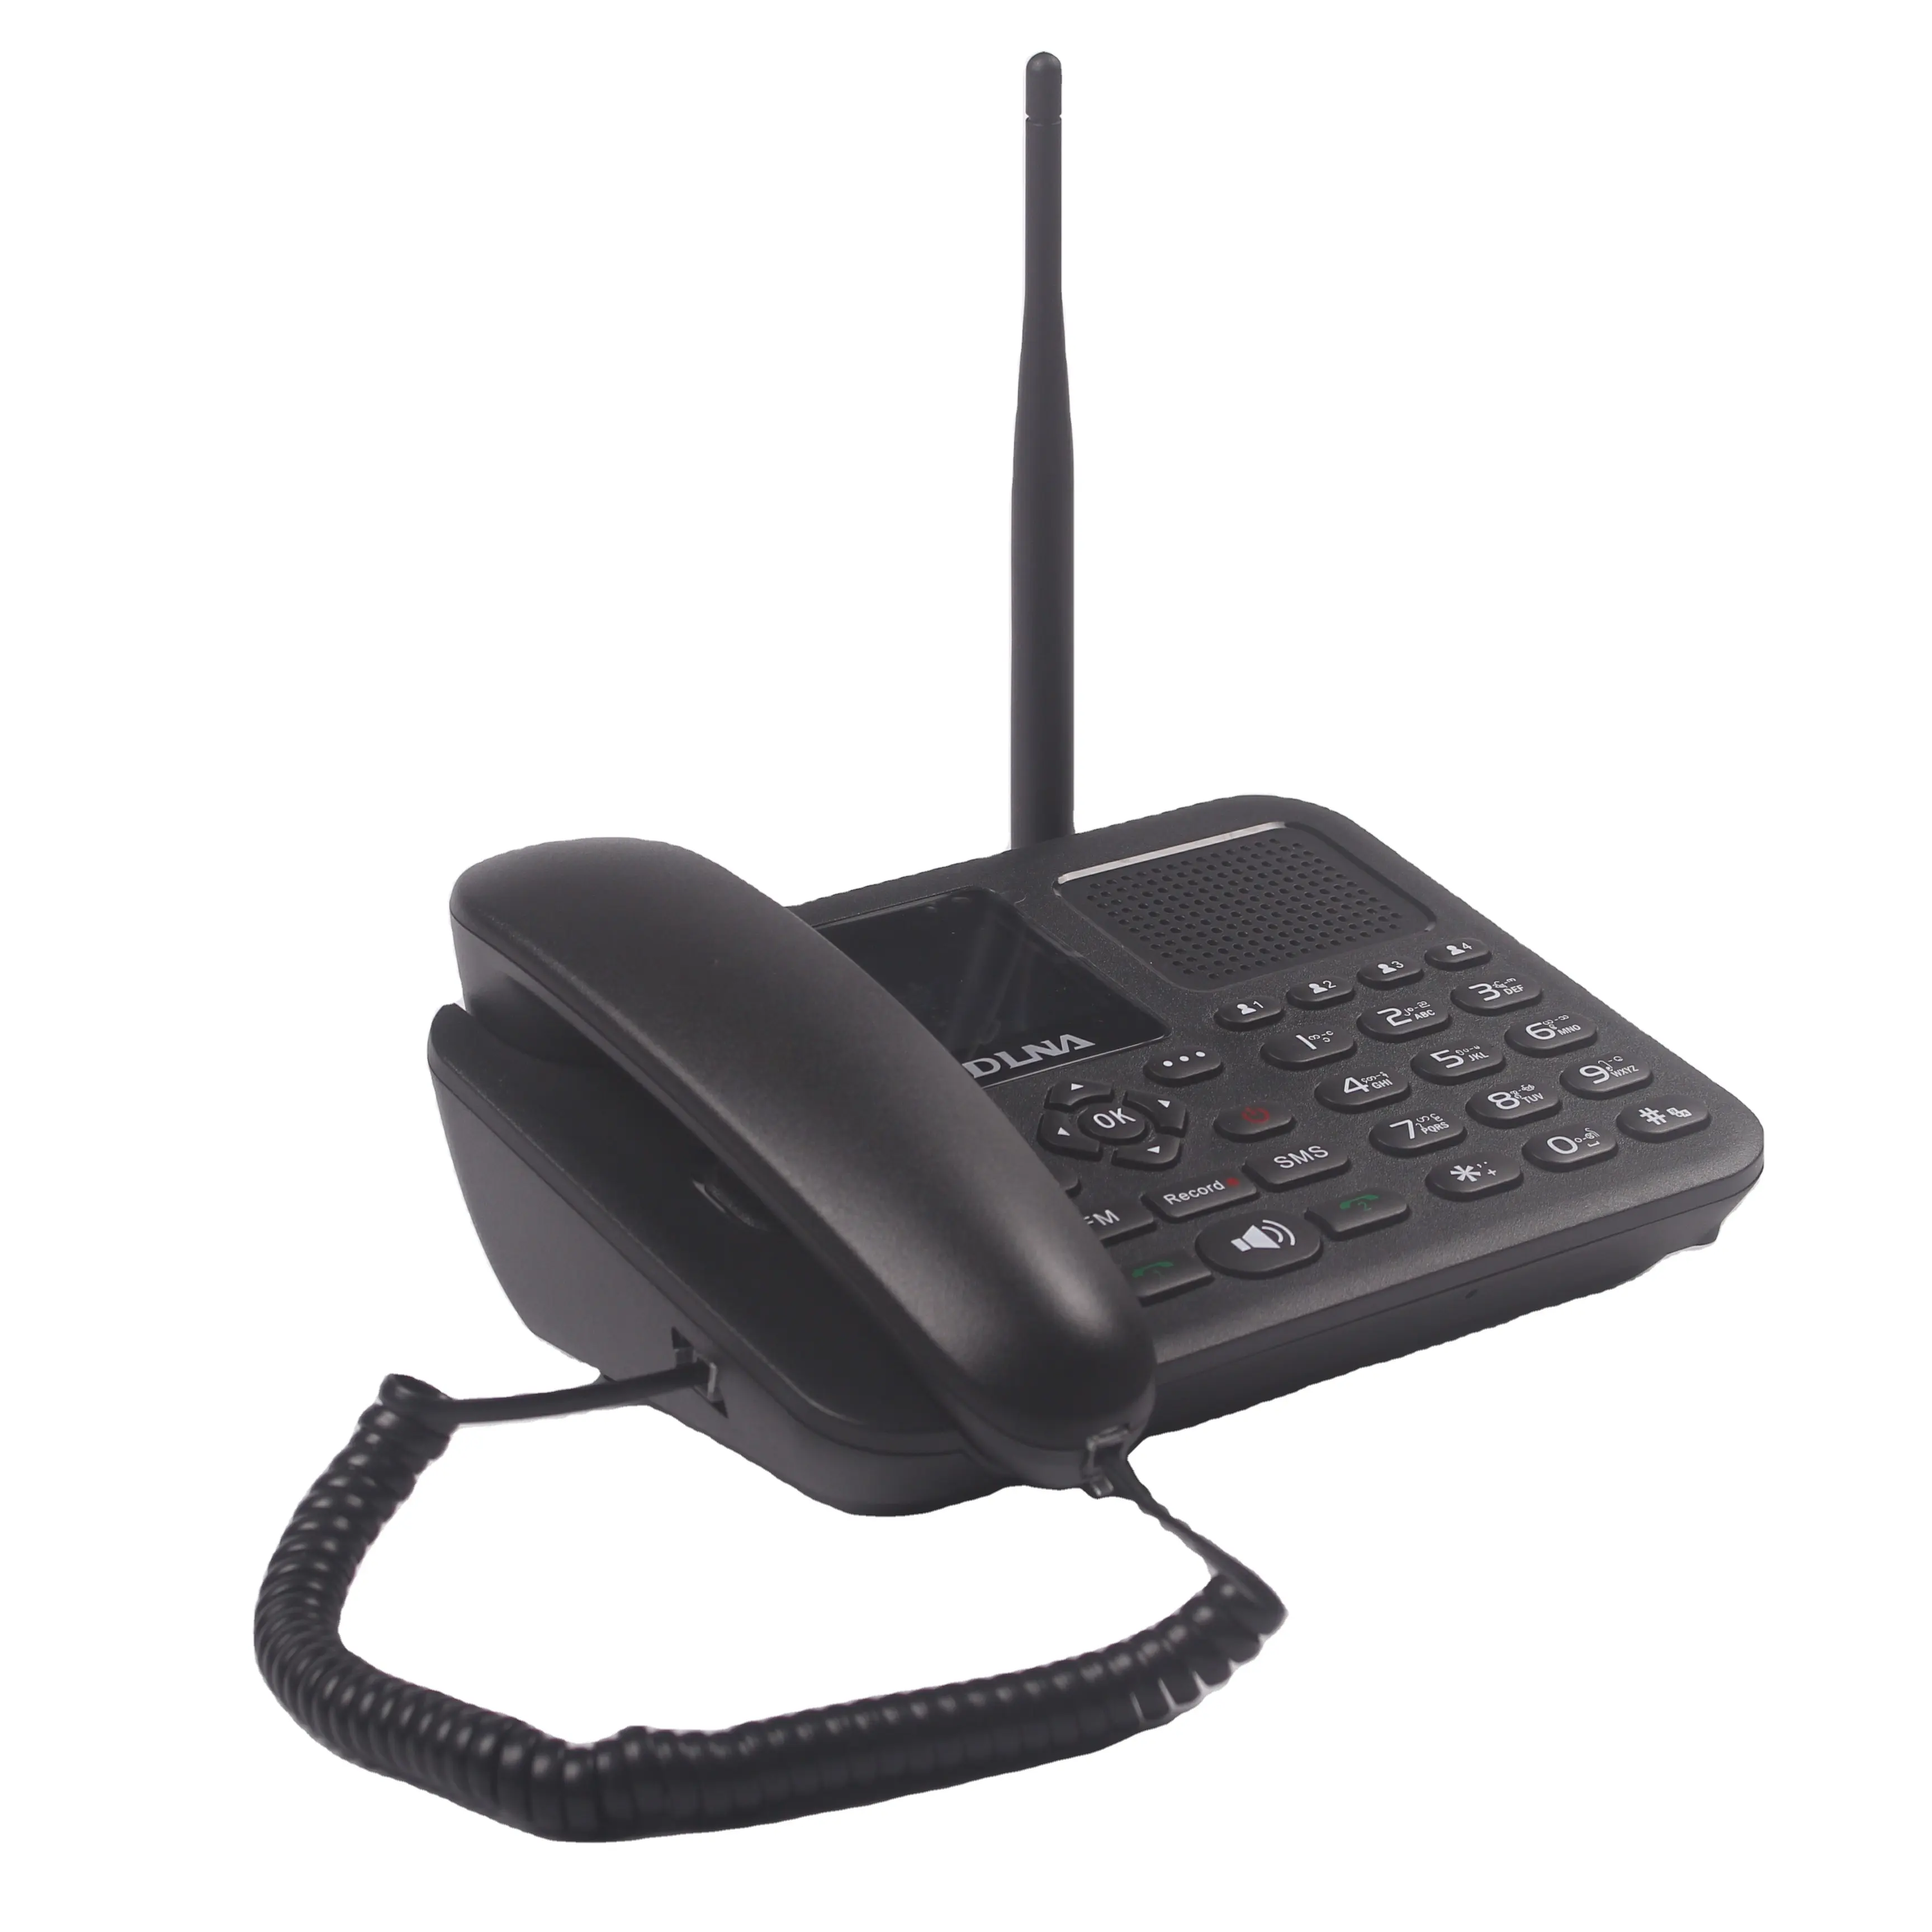 โทรศัพท์ไร้สาย DLNA ZT9000 Quad-band GSM เดสก์ท็อปโทรศัพท์สองซิมสำหรับบ้านสำนักงาน